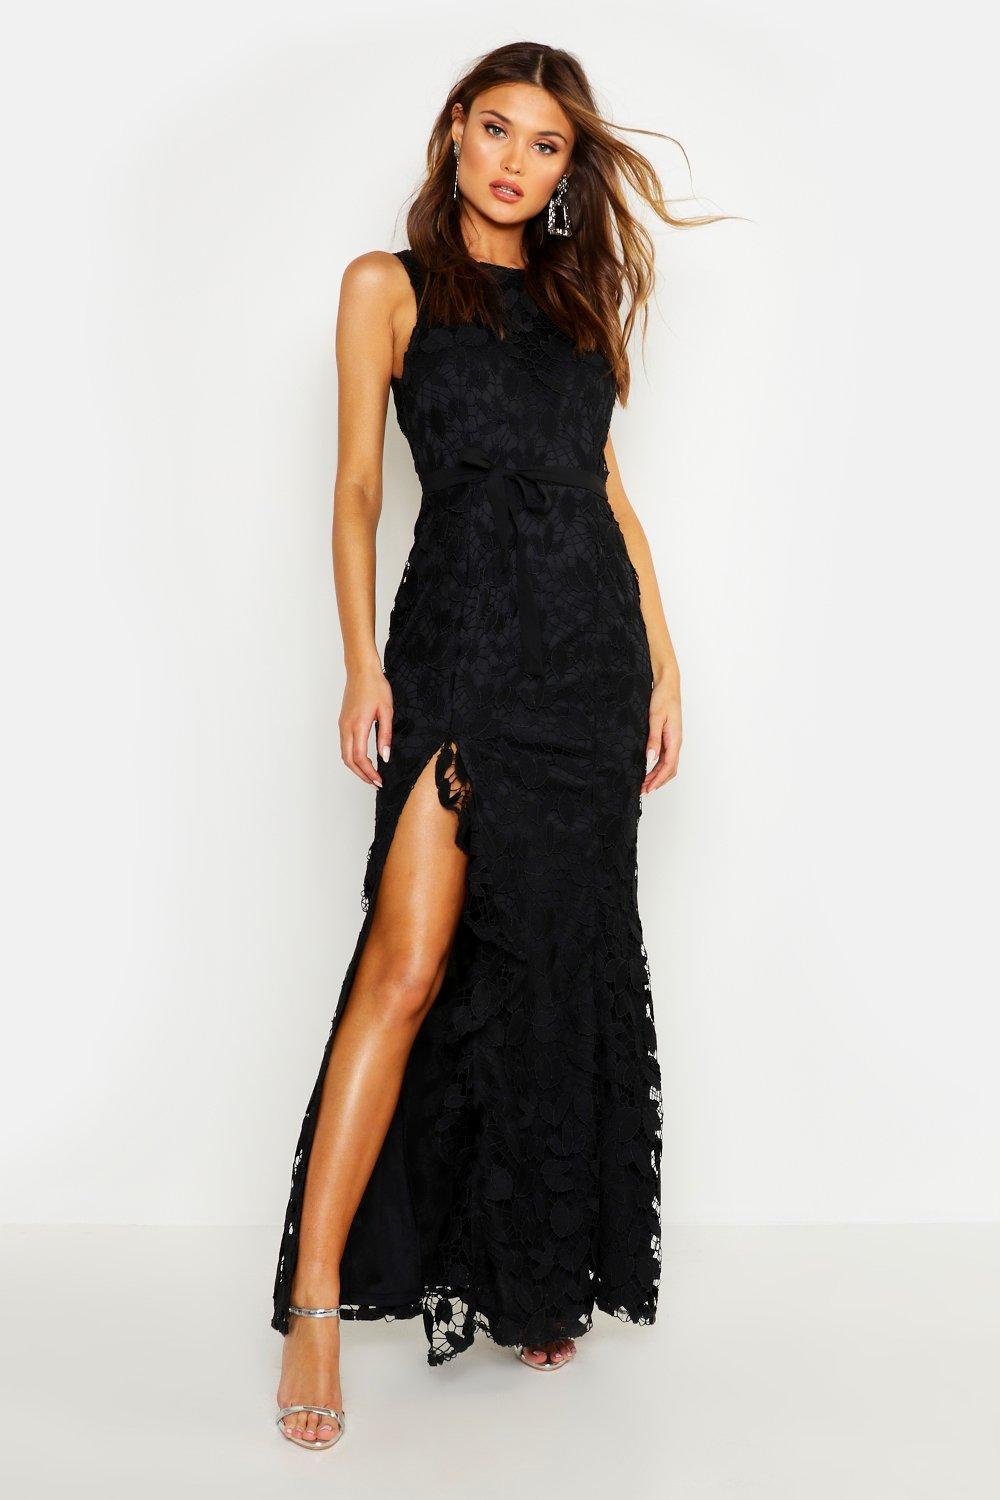 Boohoo Lace Ruffle Split Maxi Dress in Black - Lyst